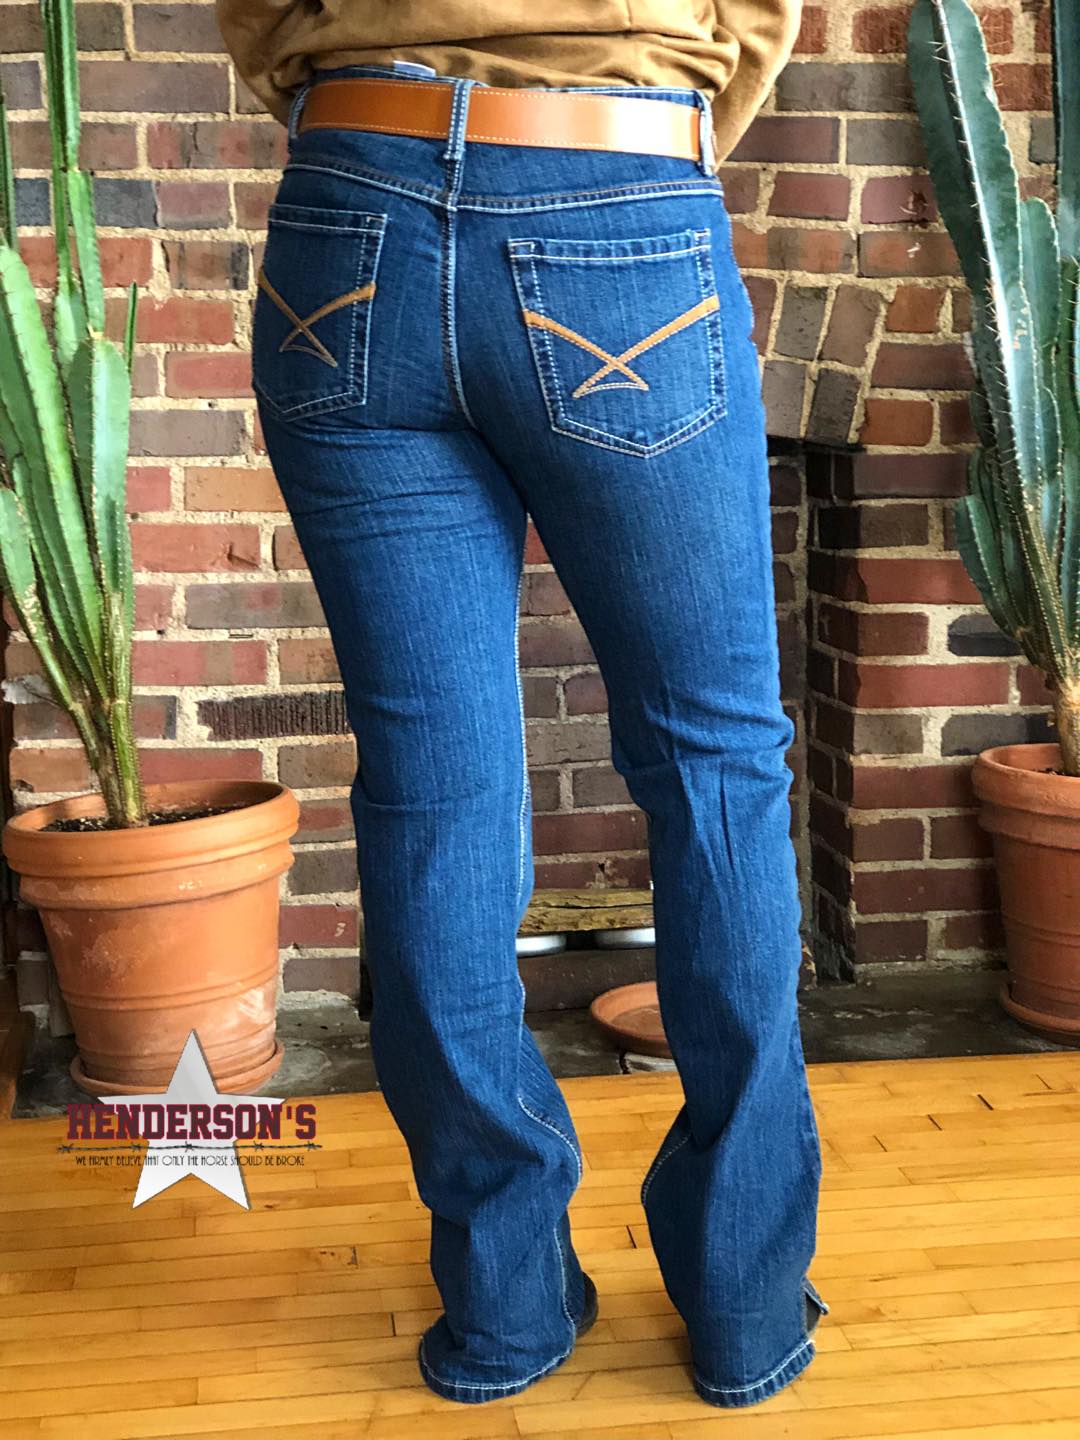 Ladies Kylie Cinch Jeans 29/7 Long